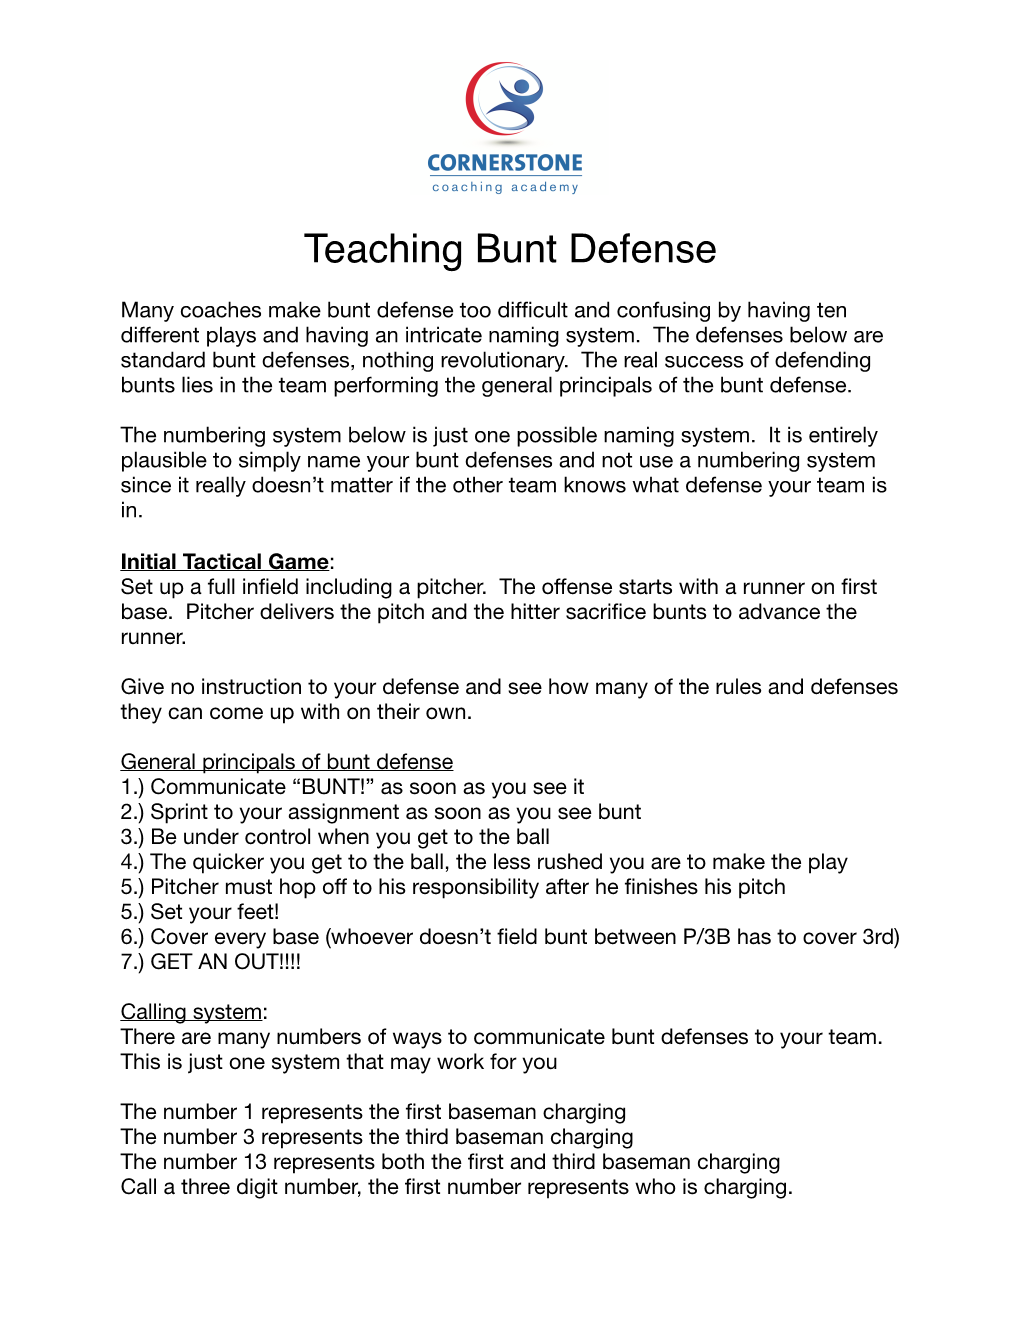 Teaching Bunt Defenses Progression